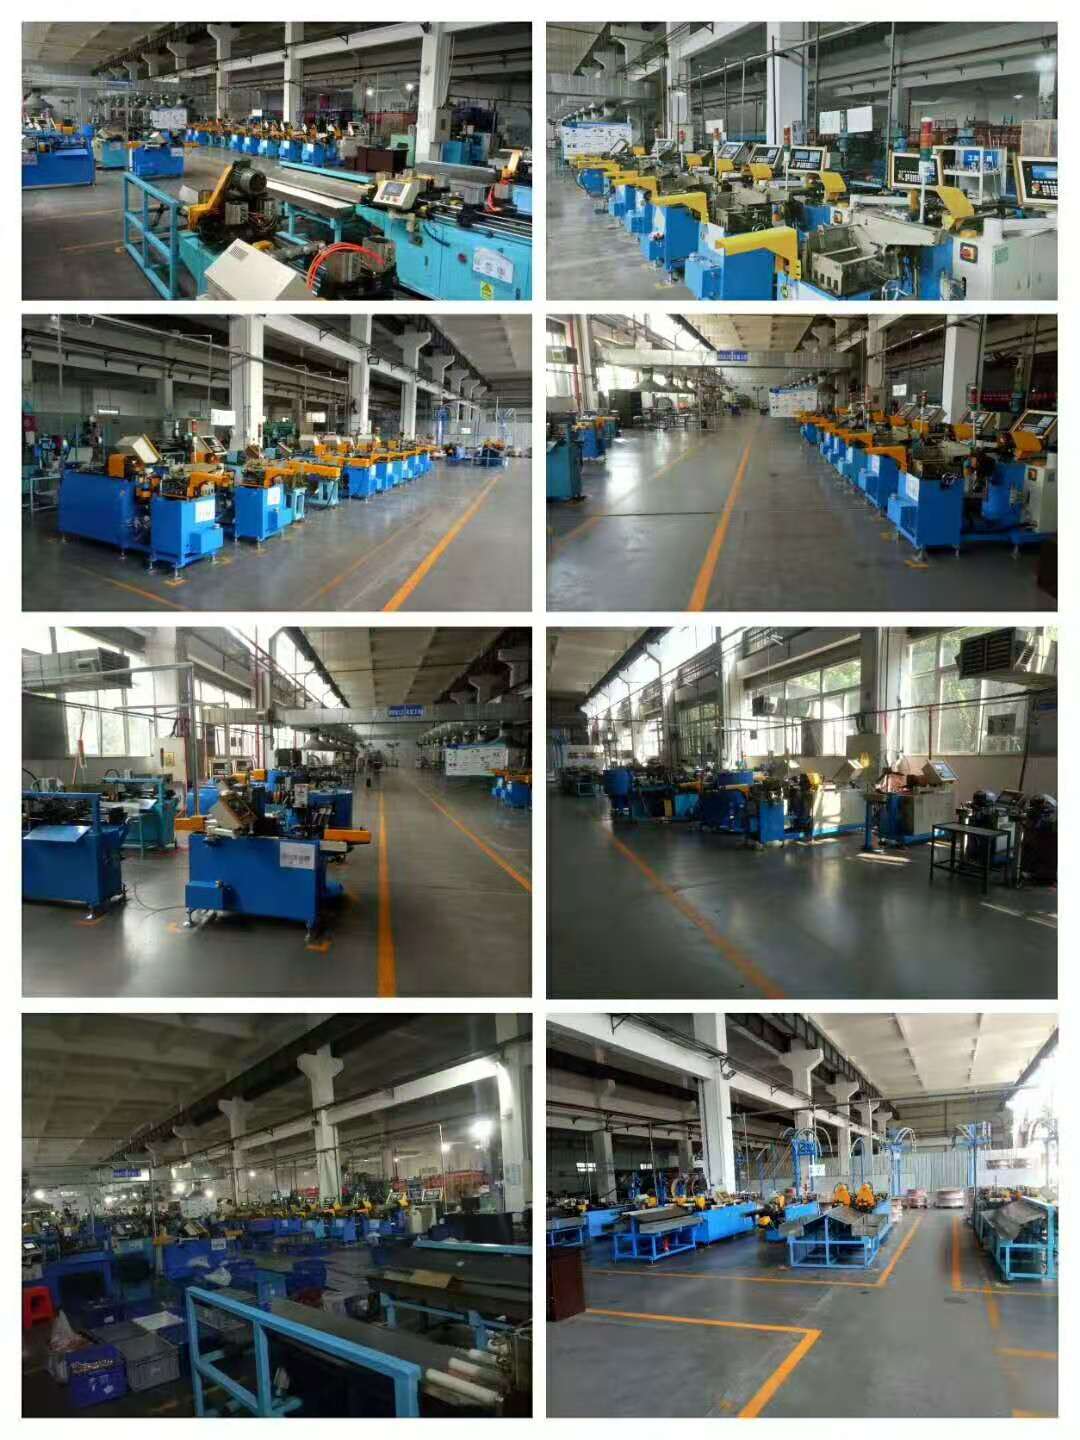 重庆泰诺机械有限公司 环境照片活动图片